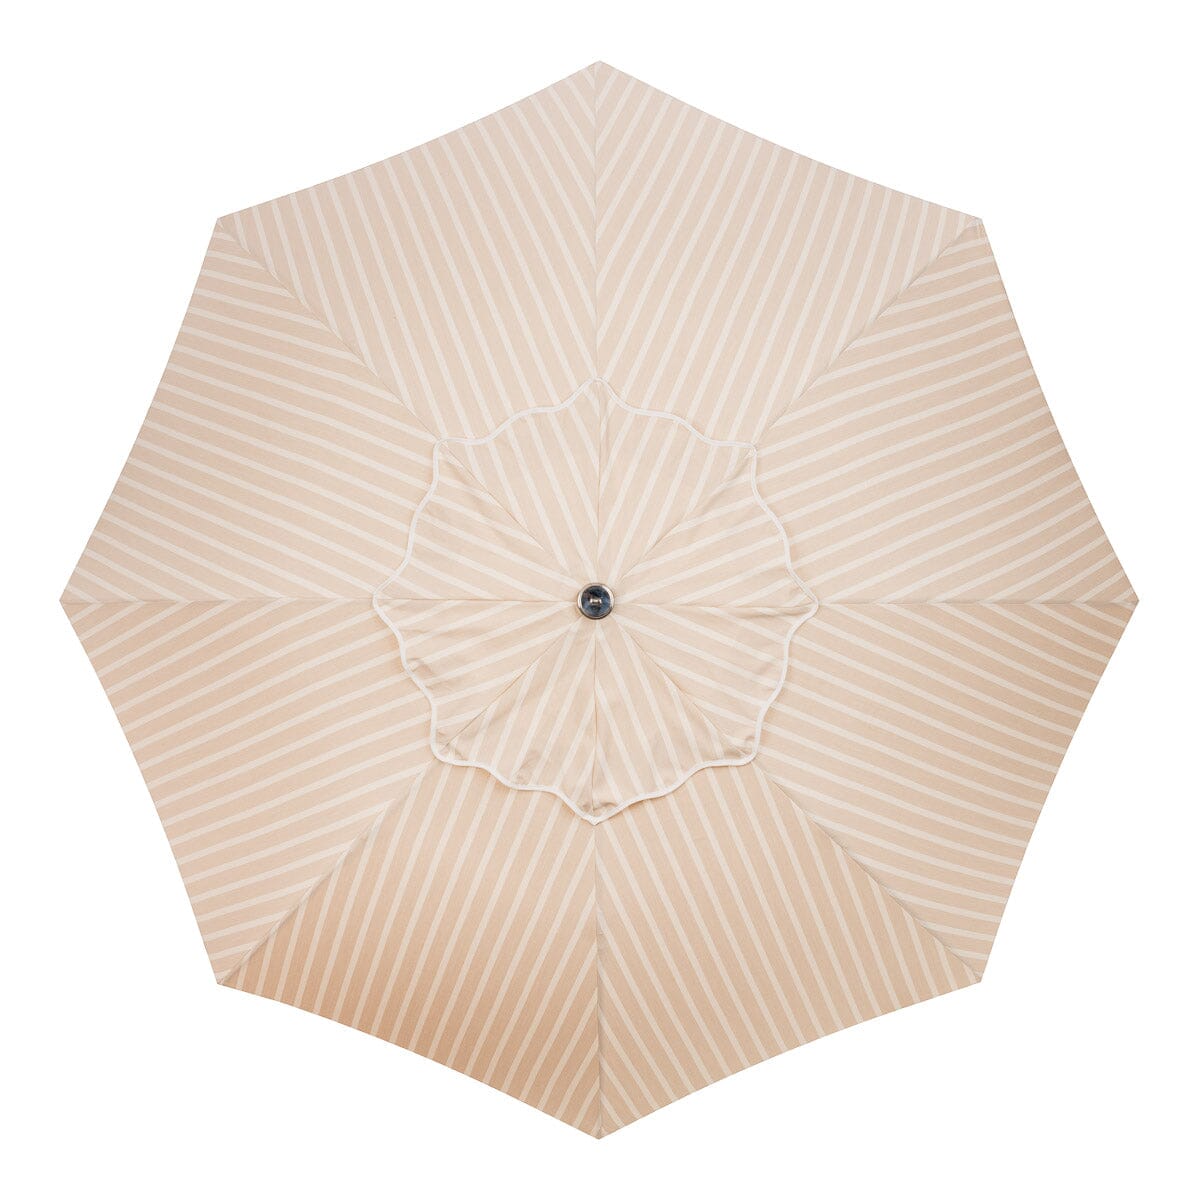 The Patio Umbrella - Monaco Natural Stripe Patio Umbrella Business & Pleasure Co 